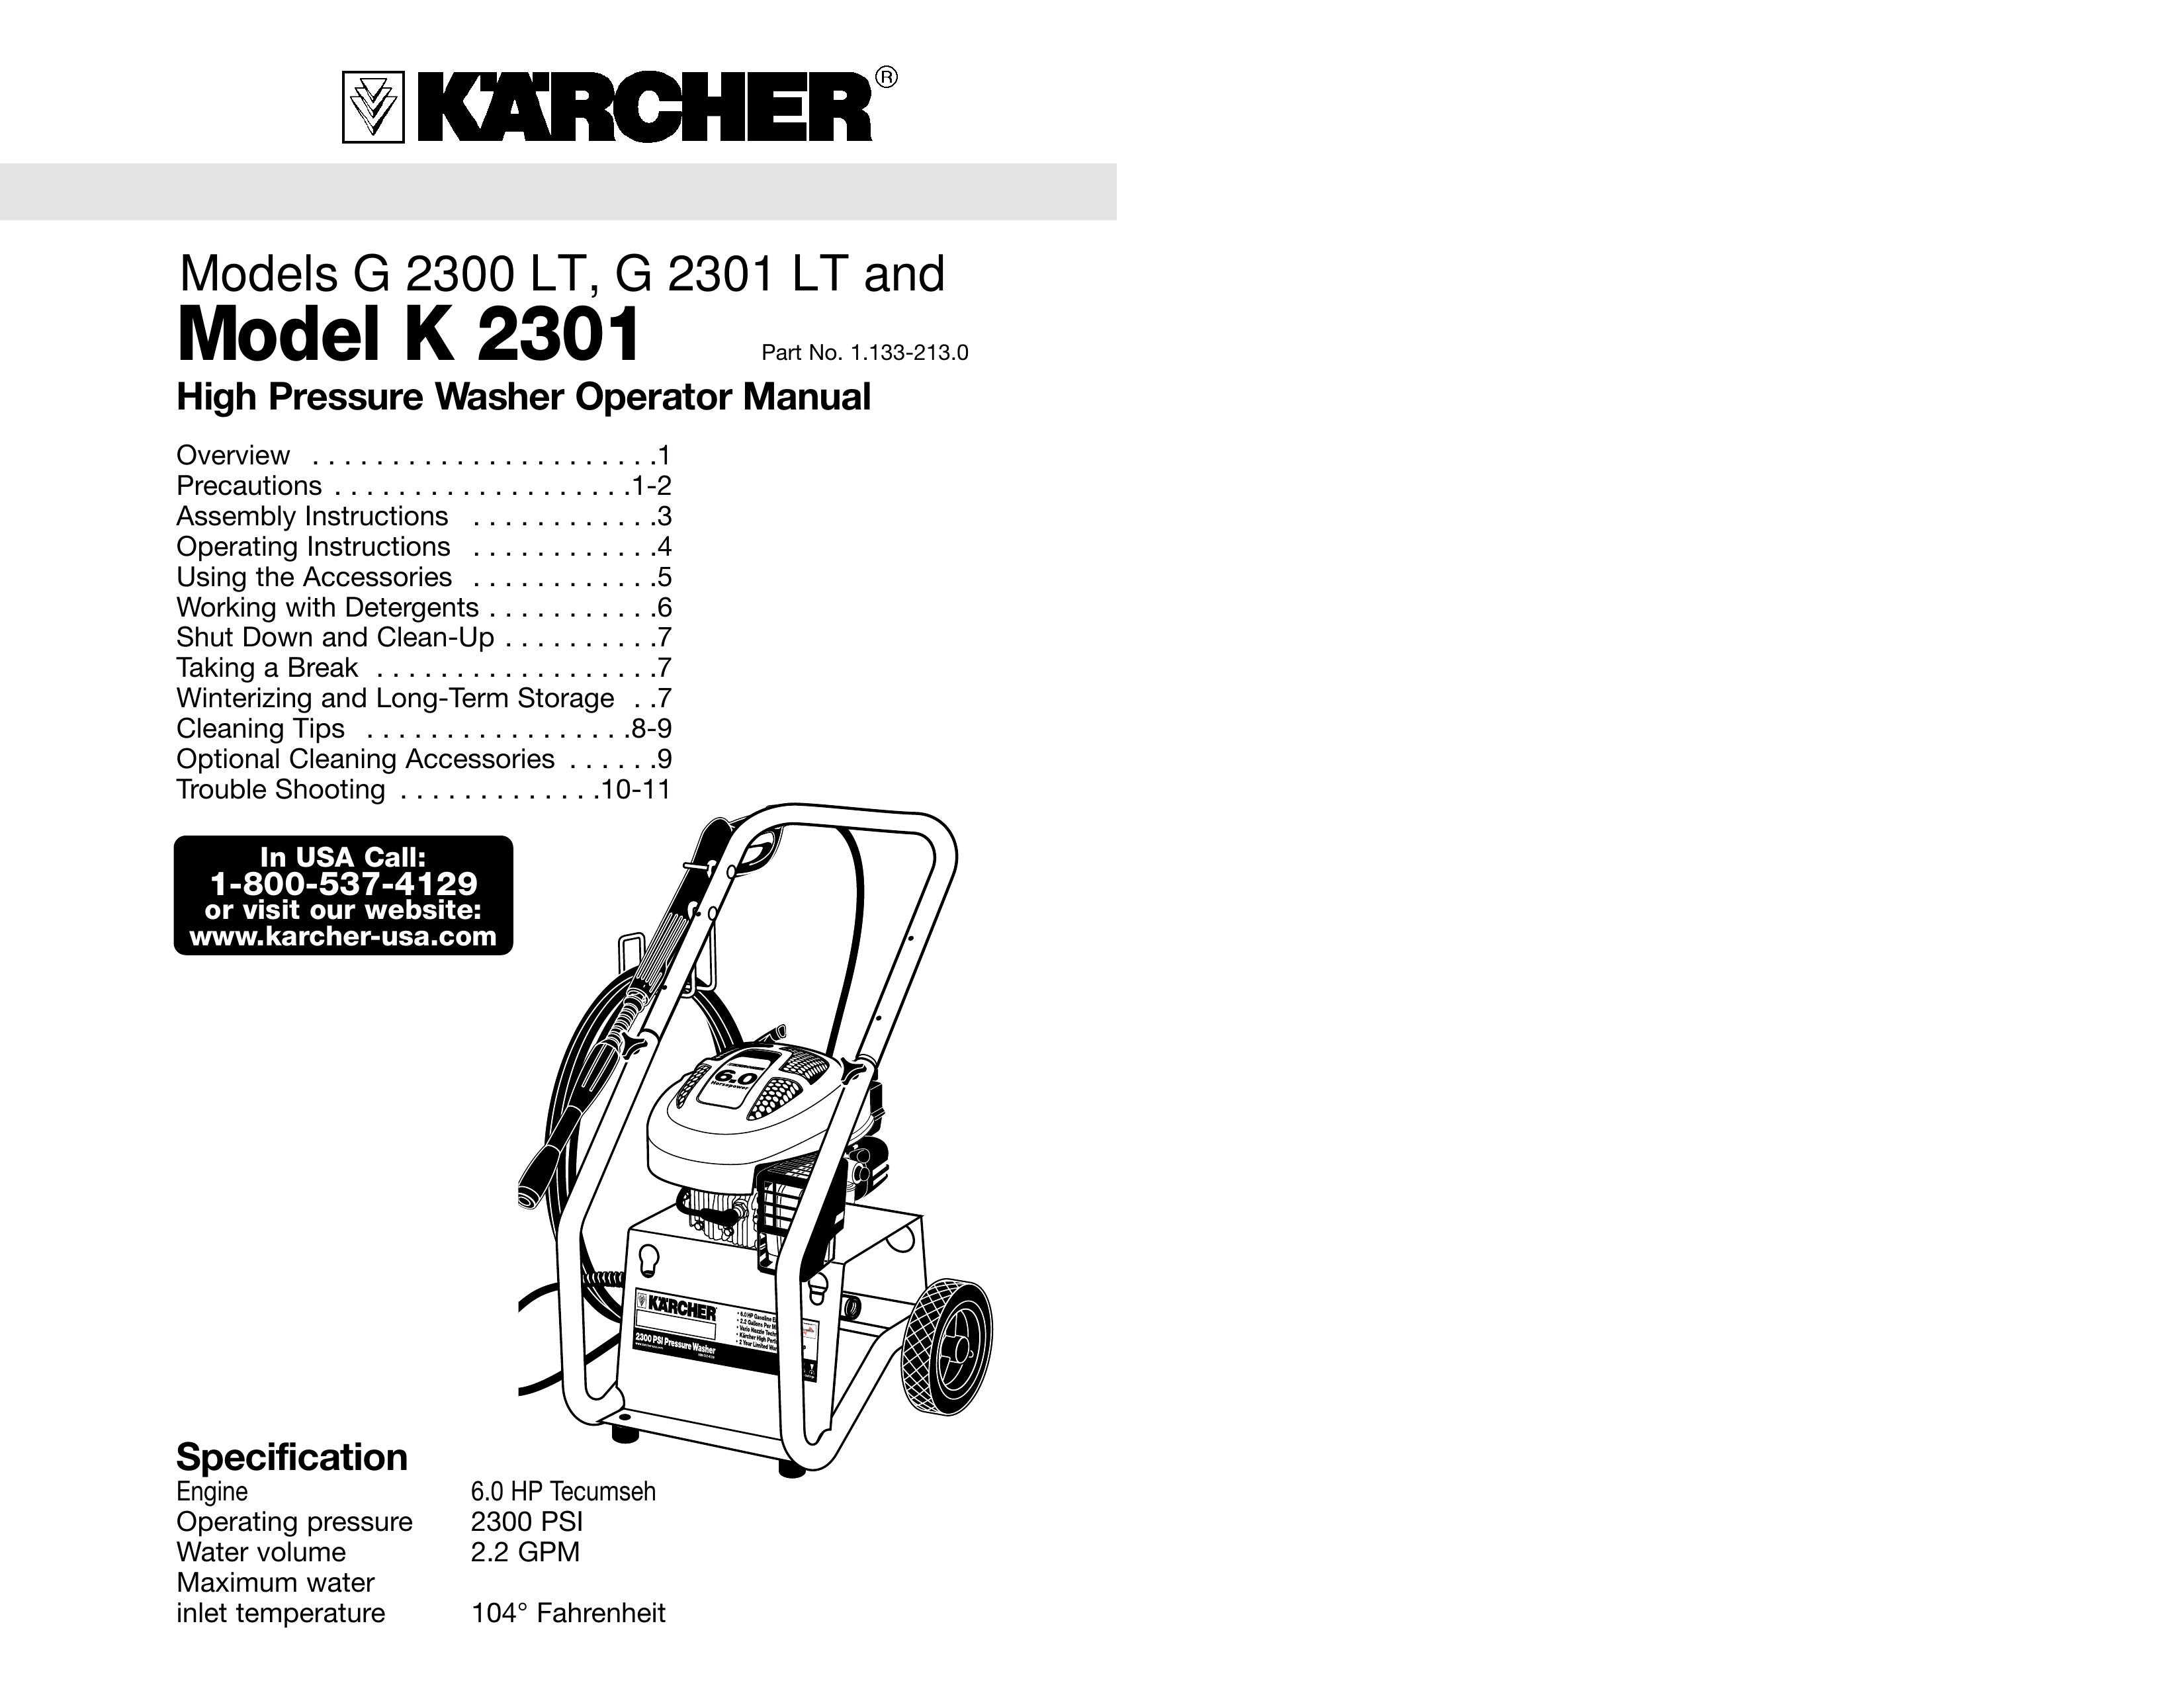 Karcher G 2301 LT, G 2301 LT, K 2301 Pressure Washer User Manual